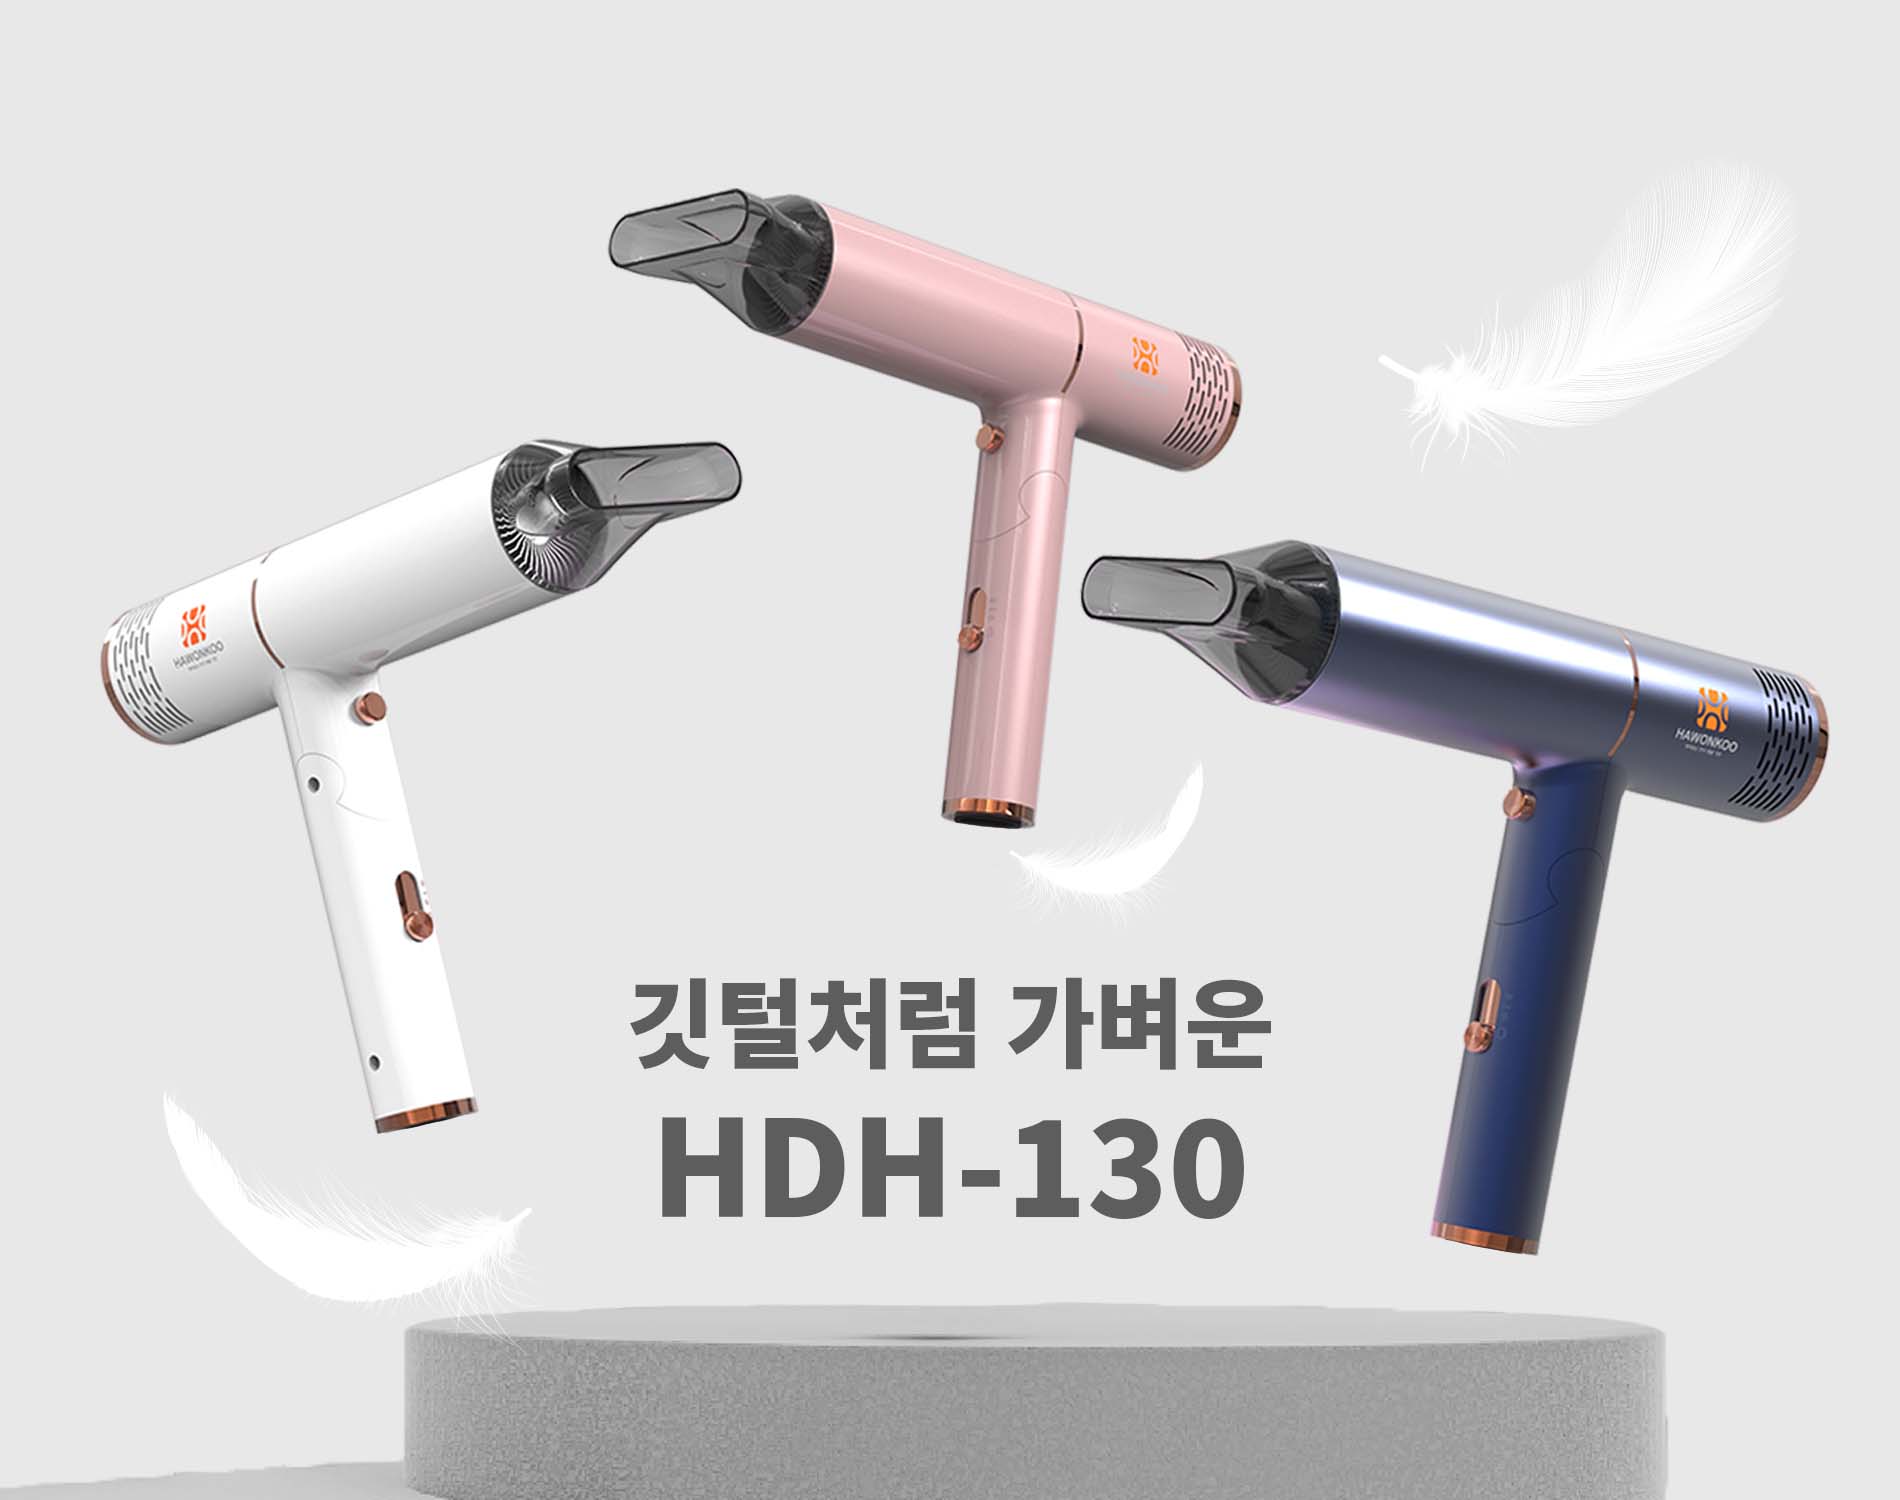 Máy sấy tóc Hawonkoo HDH-130 sở hữu thiết kế tinh gọn, công suất lớn, hiệu suất gió cao.